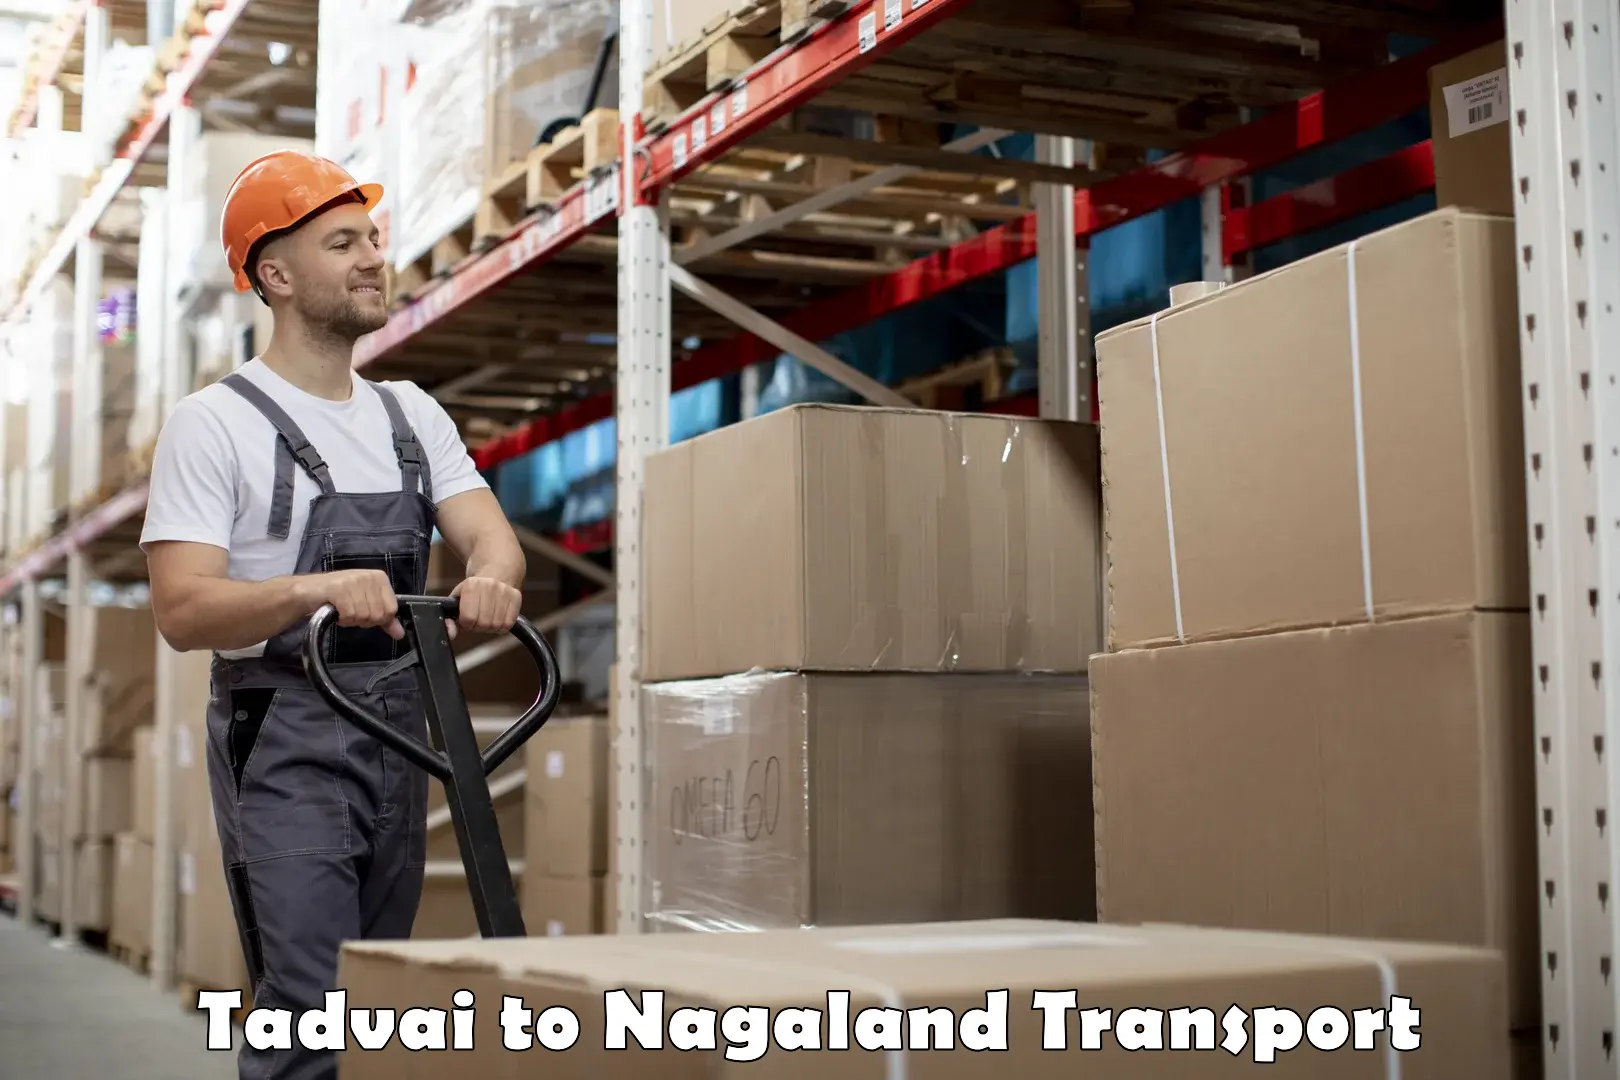 Shipping partner in Tadvai to Nagaland